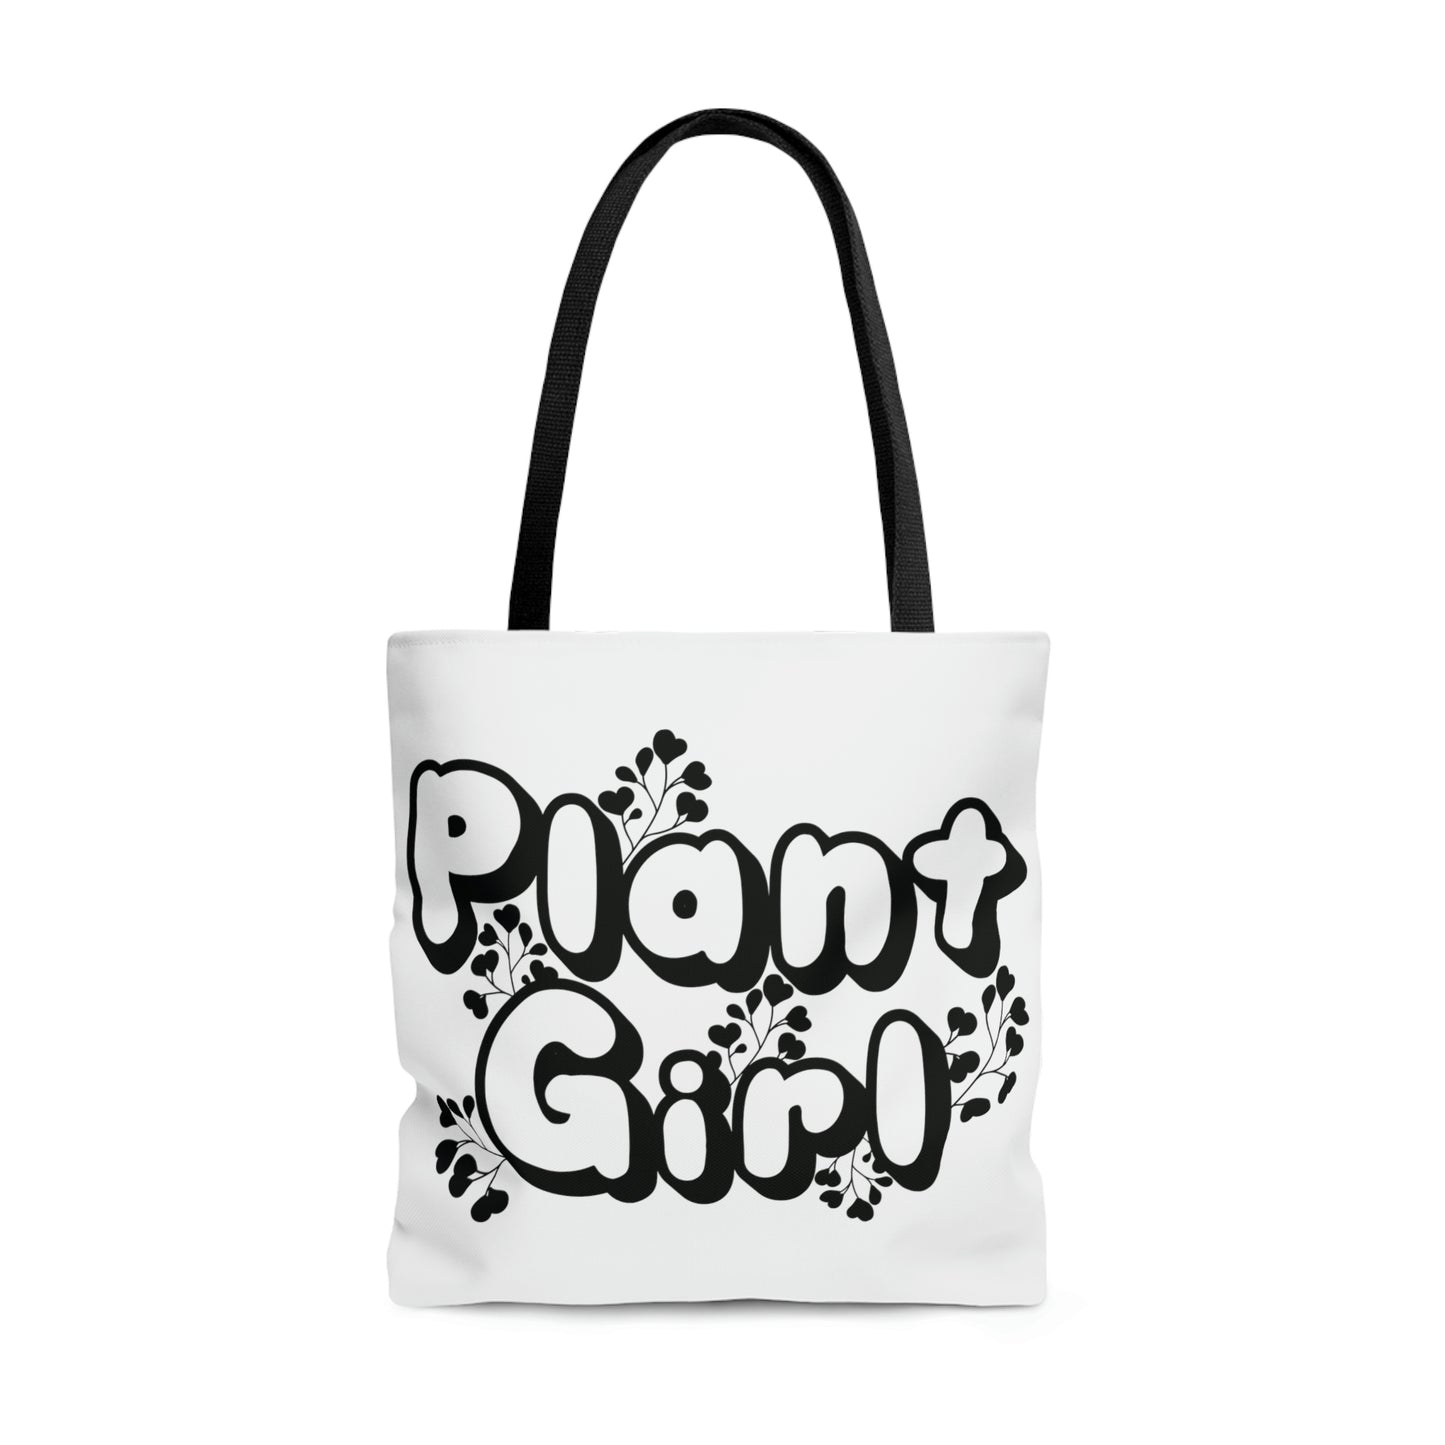 HOYAHOLIC PLANT GIRL TOTE BAG